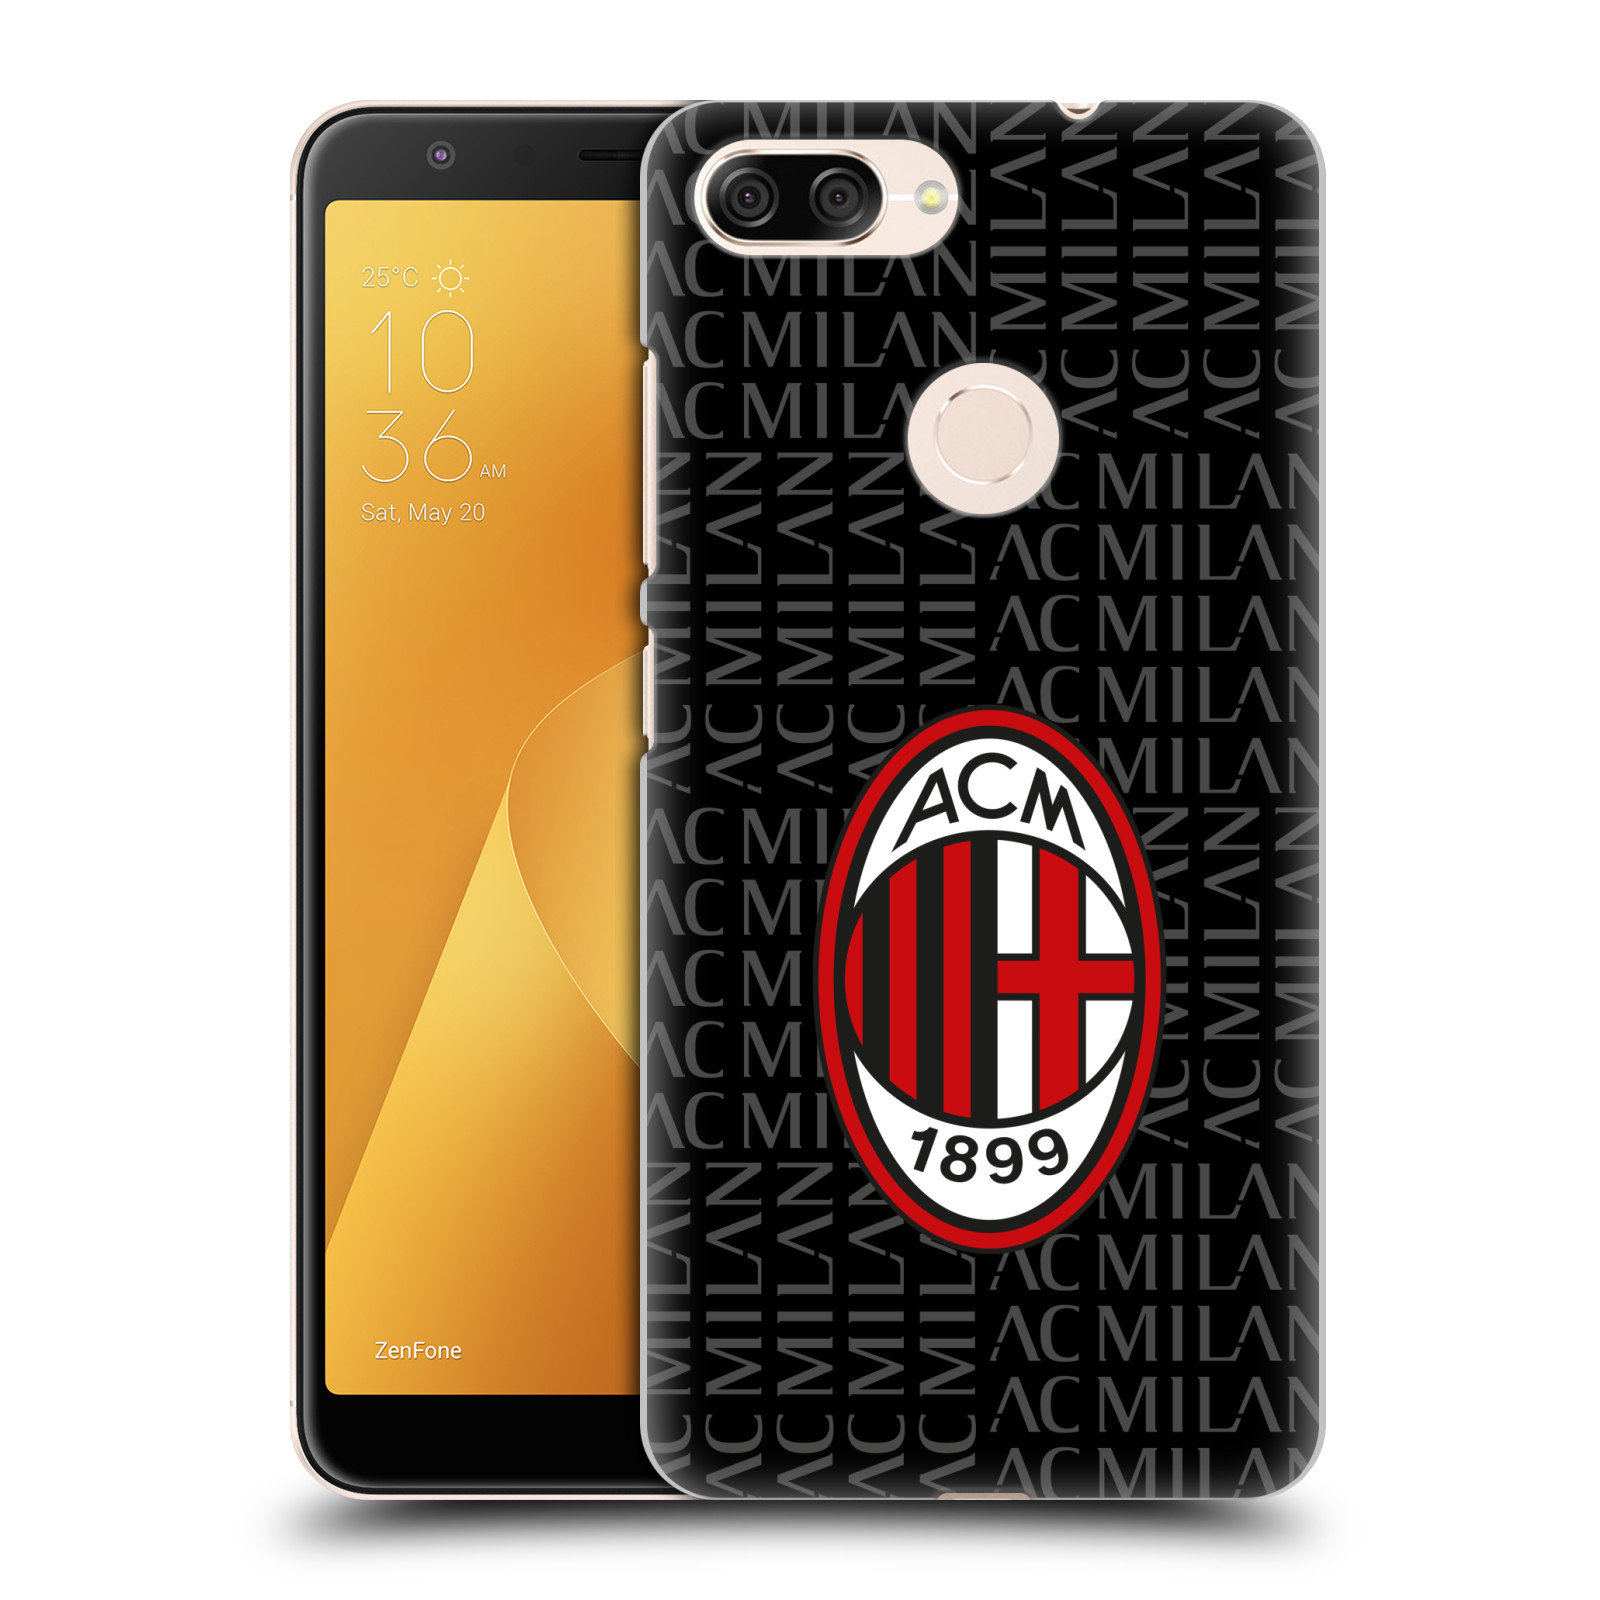 Zadní obal pro mobil Asus Zenfone Max Plus (M1) - HEAD CASE - Fotbal - Ac Milan červená a šedá